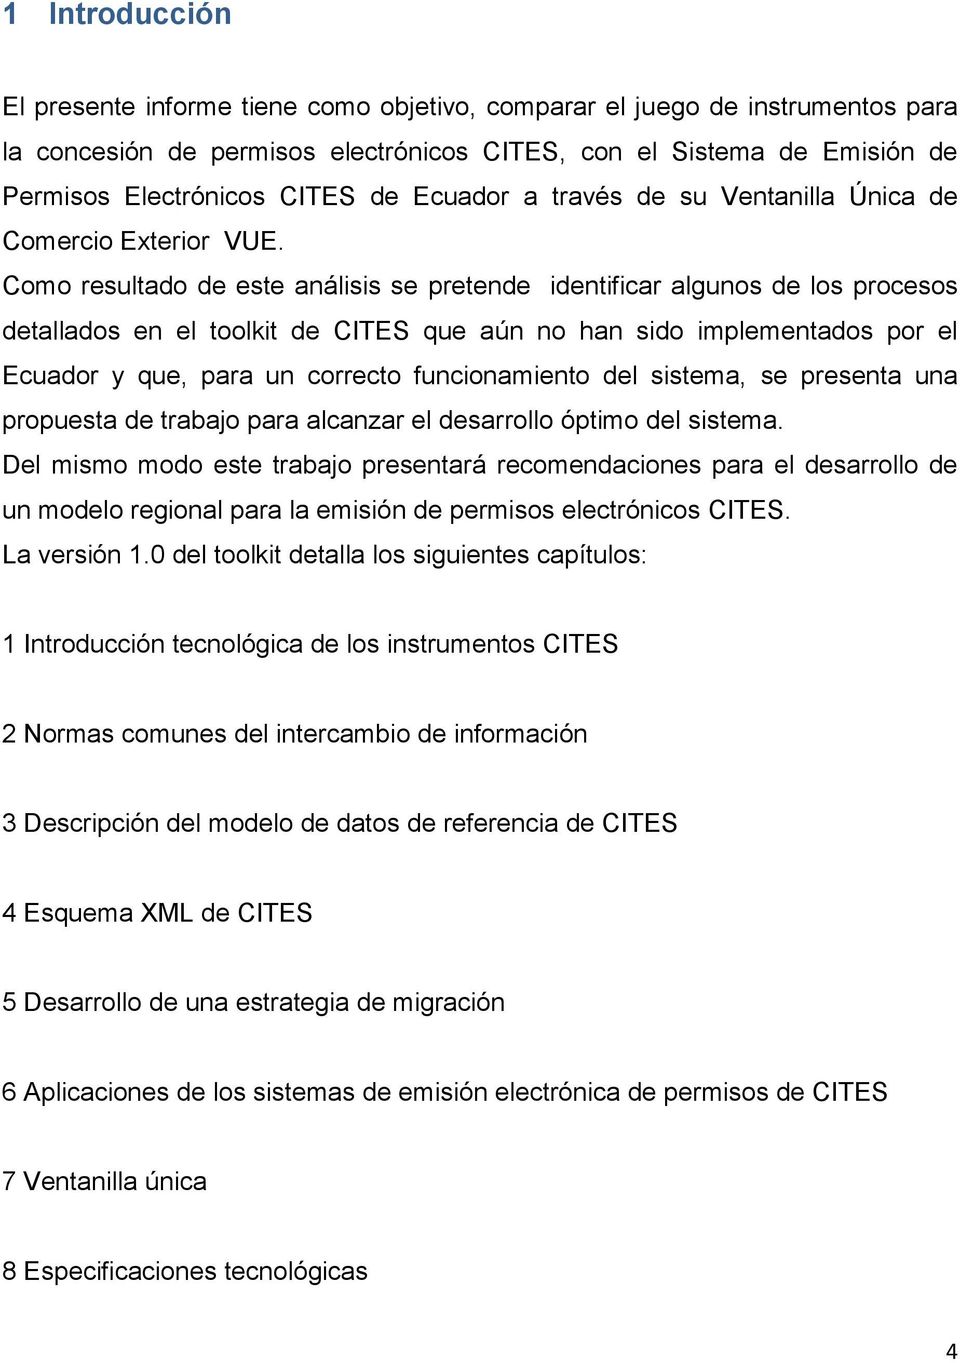 Como resultado de este análisis se pretende identificar algunos de los procesos detallados en el toolkit de CITES que aún no han sido implementados por el Ecuador y que, para un correcto